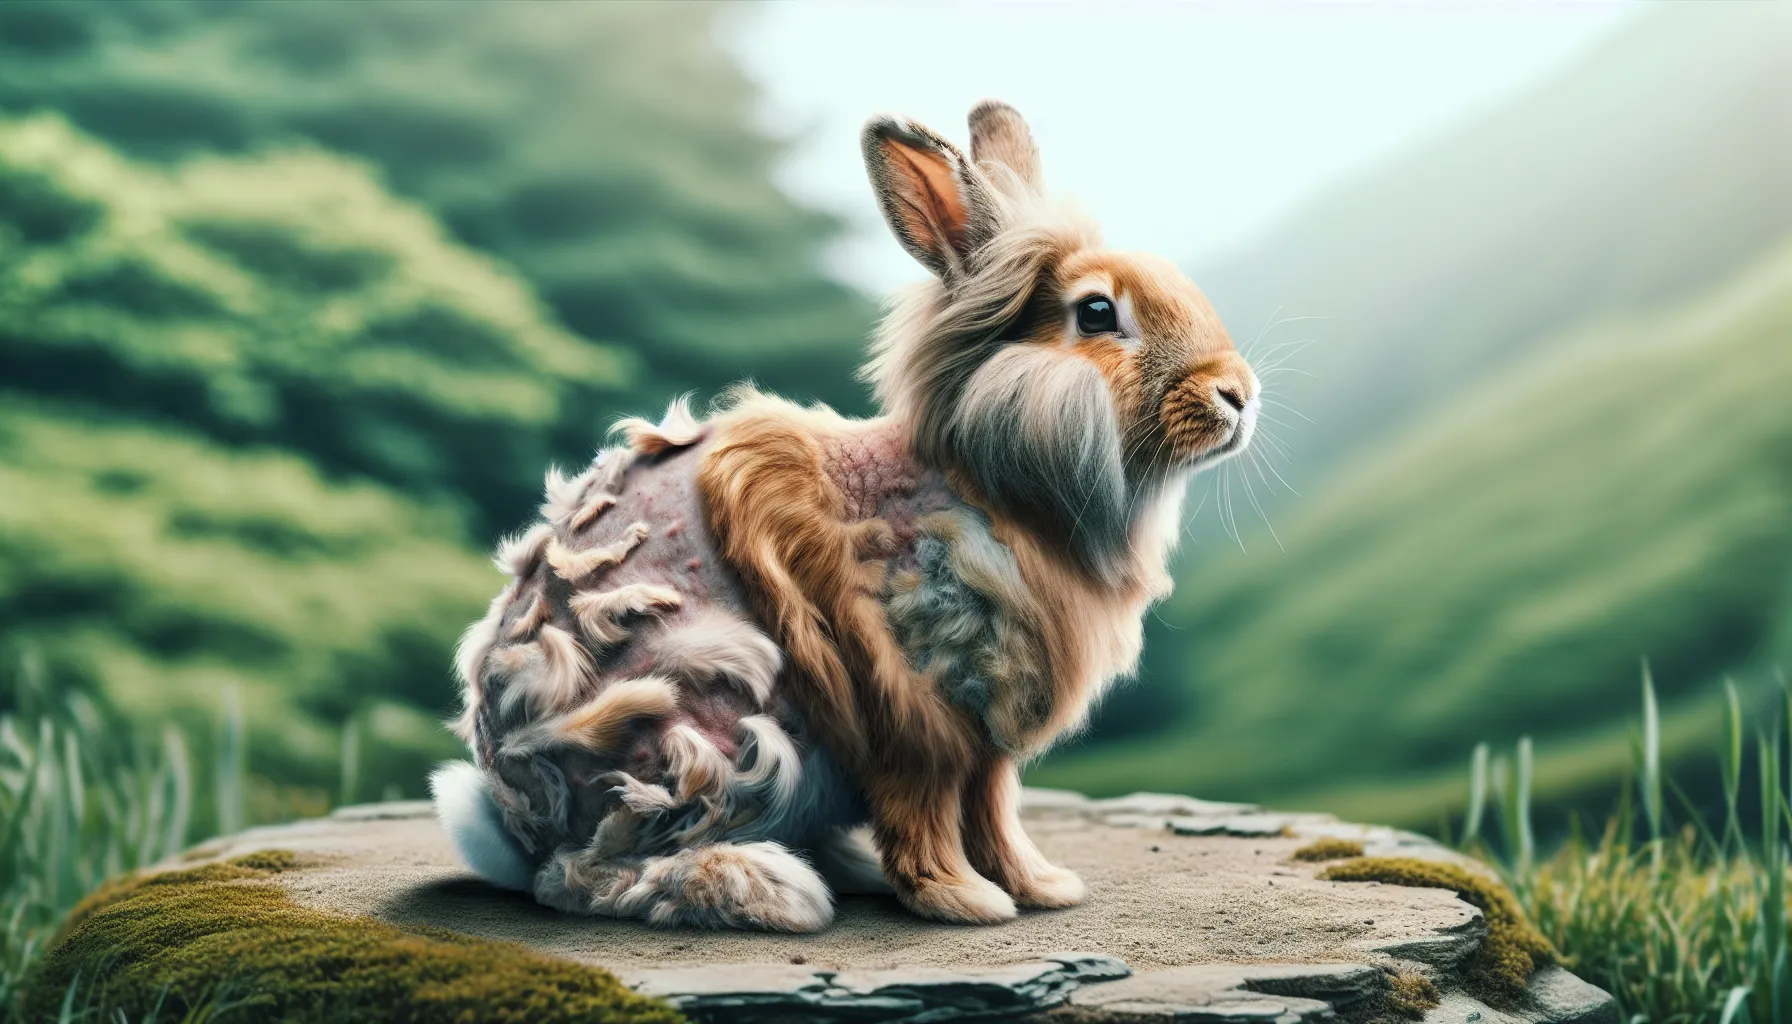 Imagen de un conejo mudando su pelaje, mostrando el proceso natural de renovación de su pelaje.